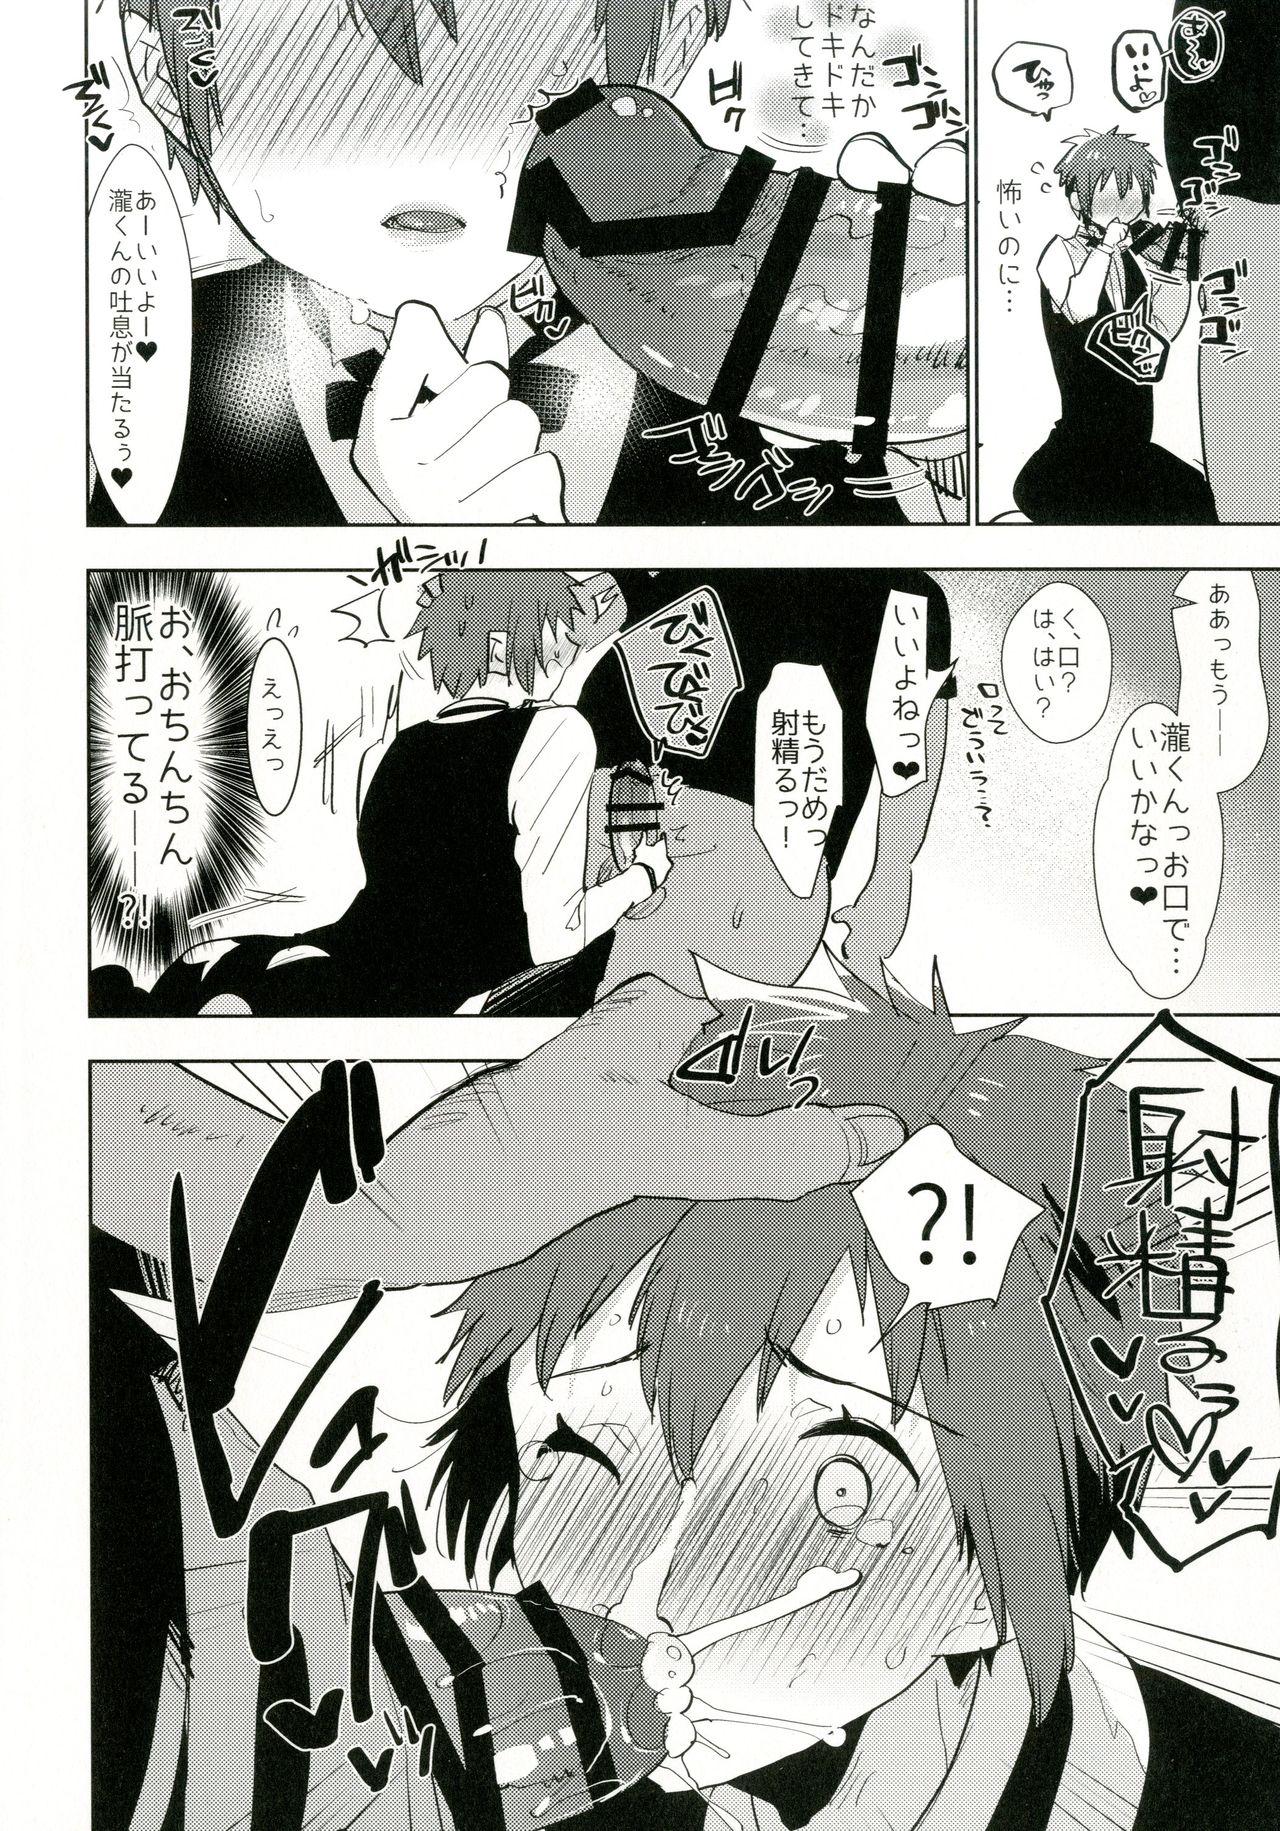 Nuru Watashi no Yume ga Owaru made. - Kimi no na wa. Affair - Page 8